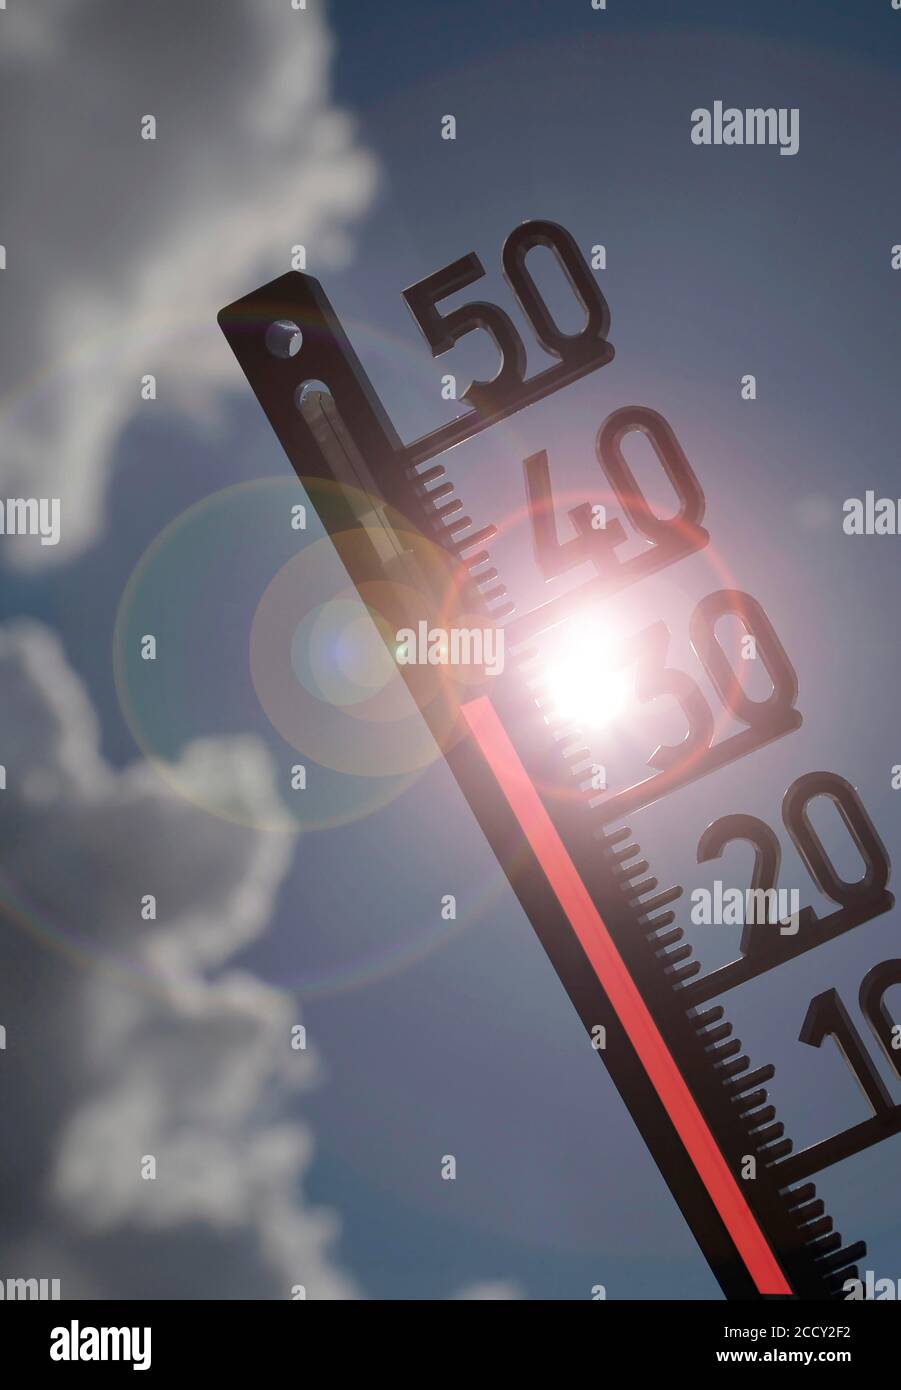 Immagine simbolo onda di calore, termometro al sole, 38 gradi Celsius, Baden-Wuerttemberg, Germania Foto Stock